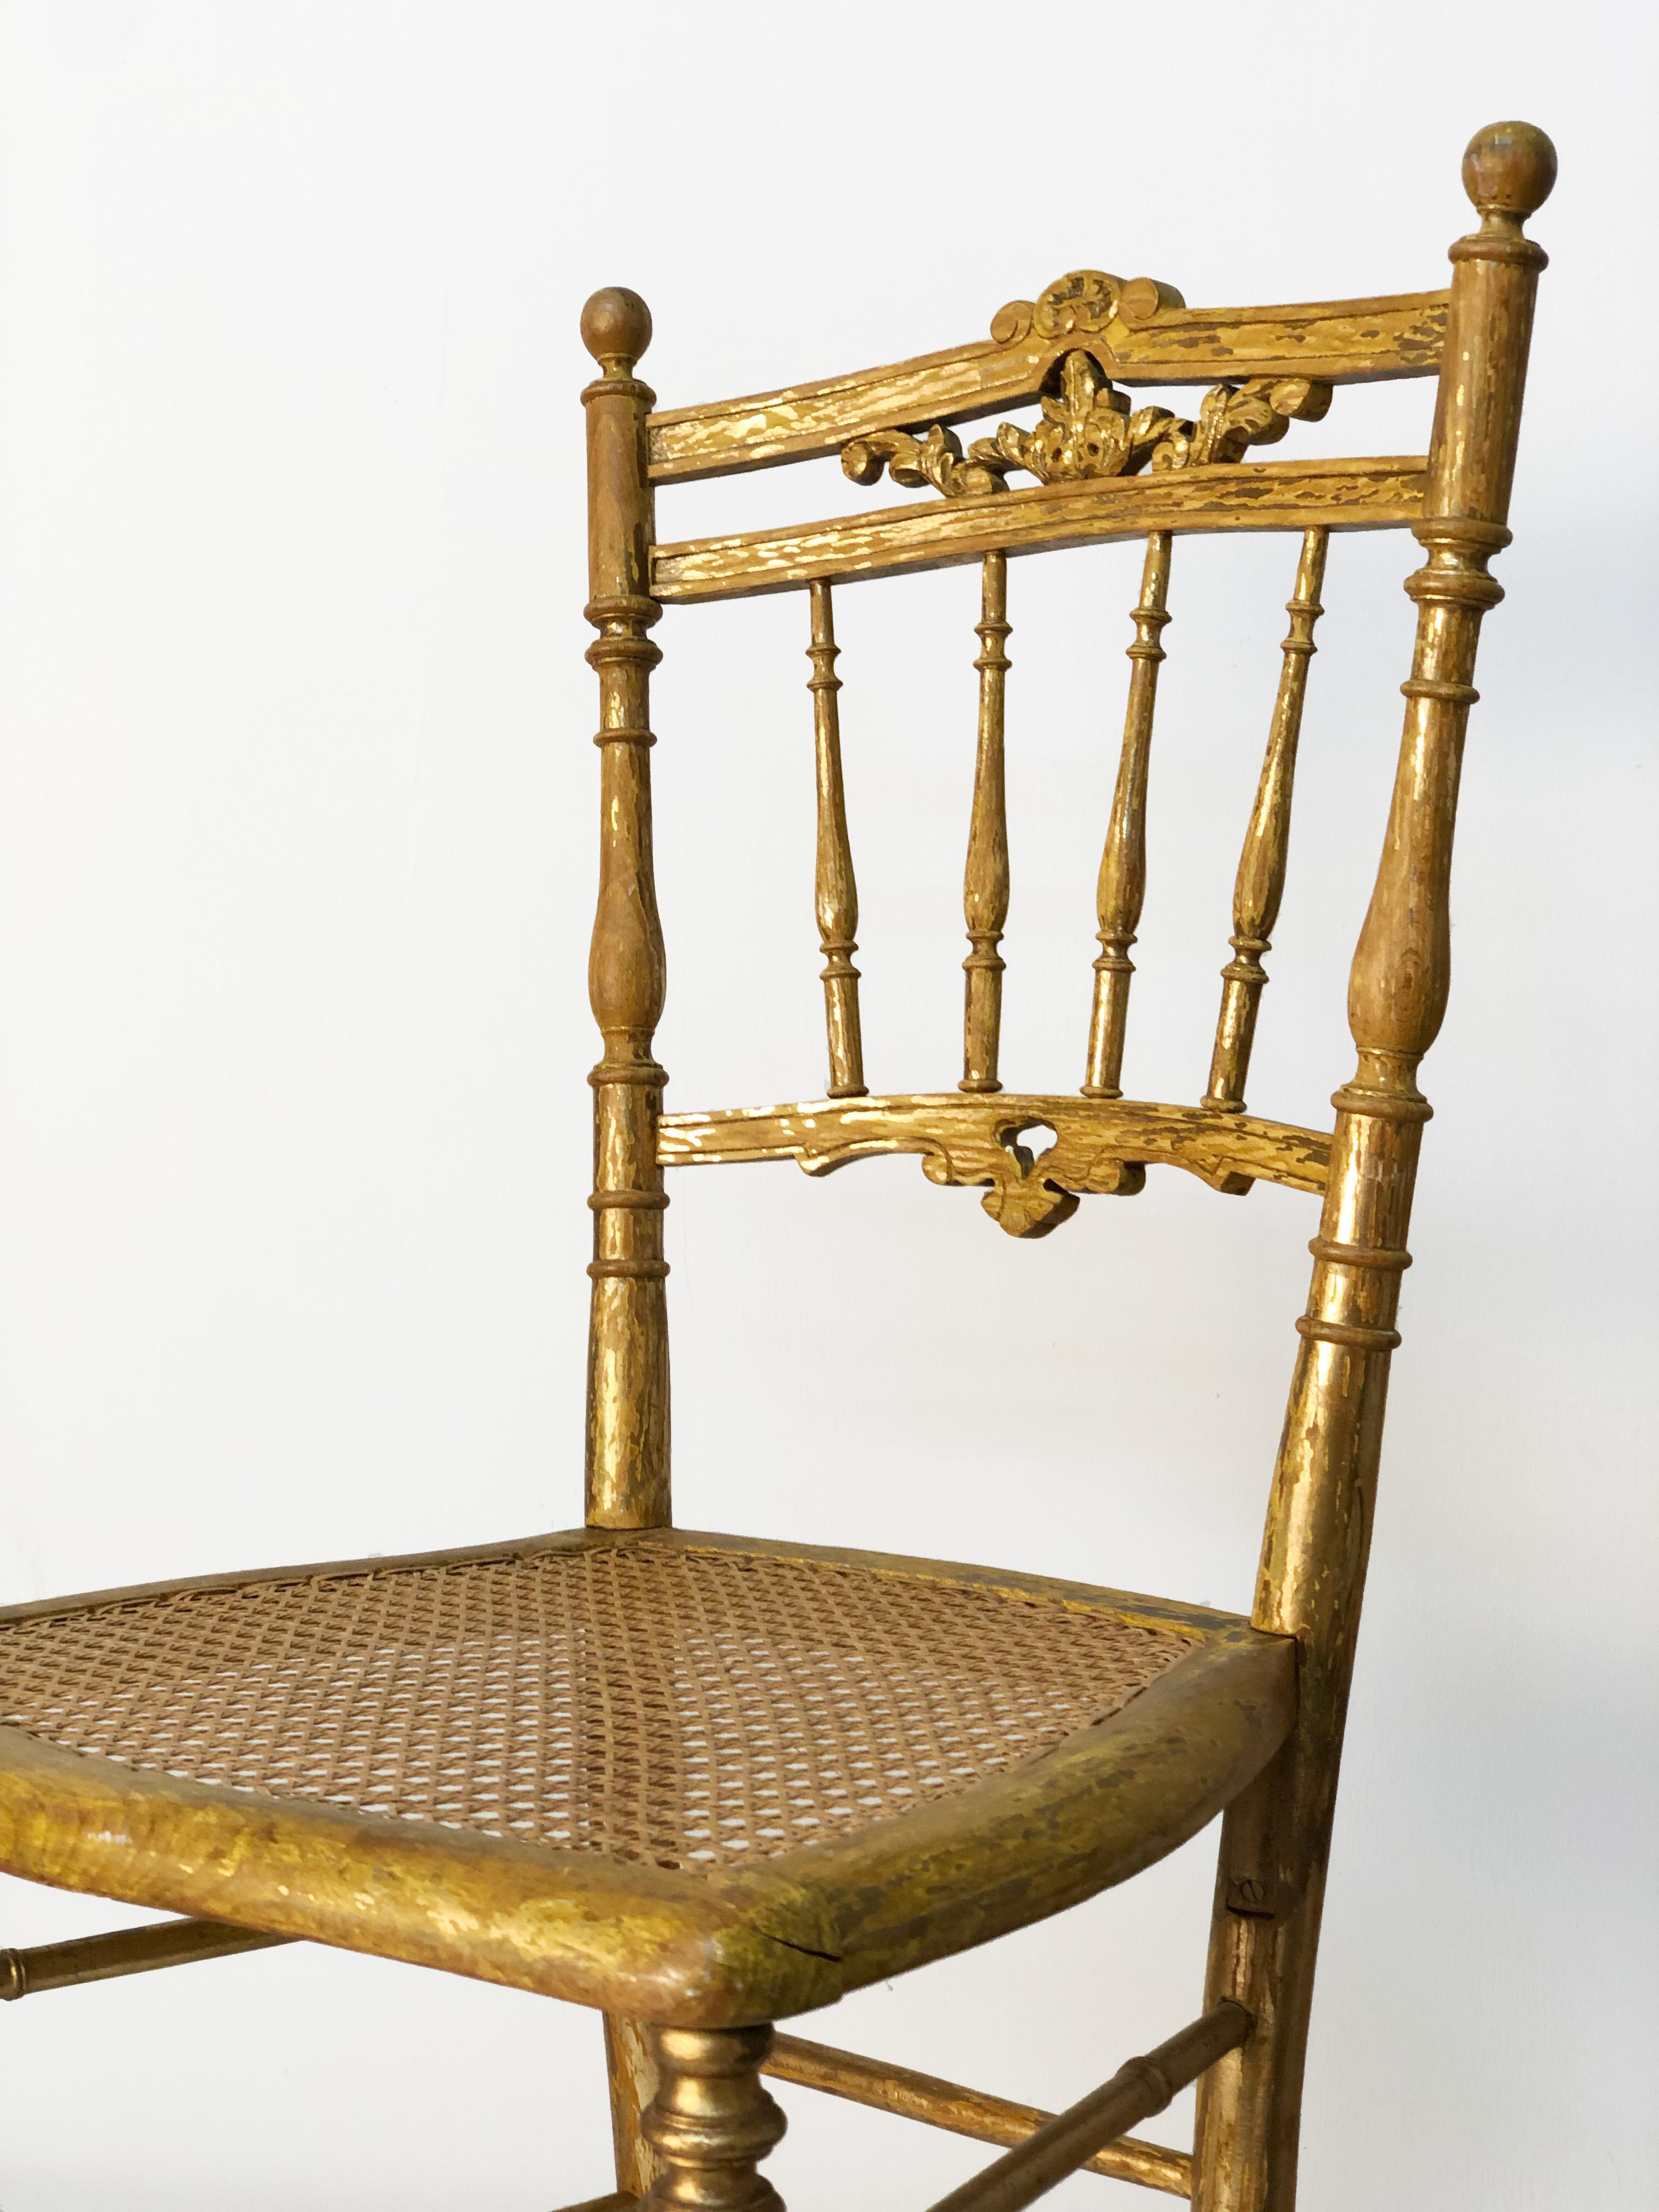 Angeboten für Ihre Betrachtung sind ein Paar von antiken italienischen 17. Jahrhundert vergoldet Empire Chiavari Stühle. Vergoldetes Weidenholz mit Sitz aus geflochtenem Schilfrohr. Handgeschnitzte Ornamente am oberen Geländer. Gedrechselte Beine,